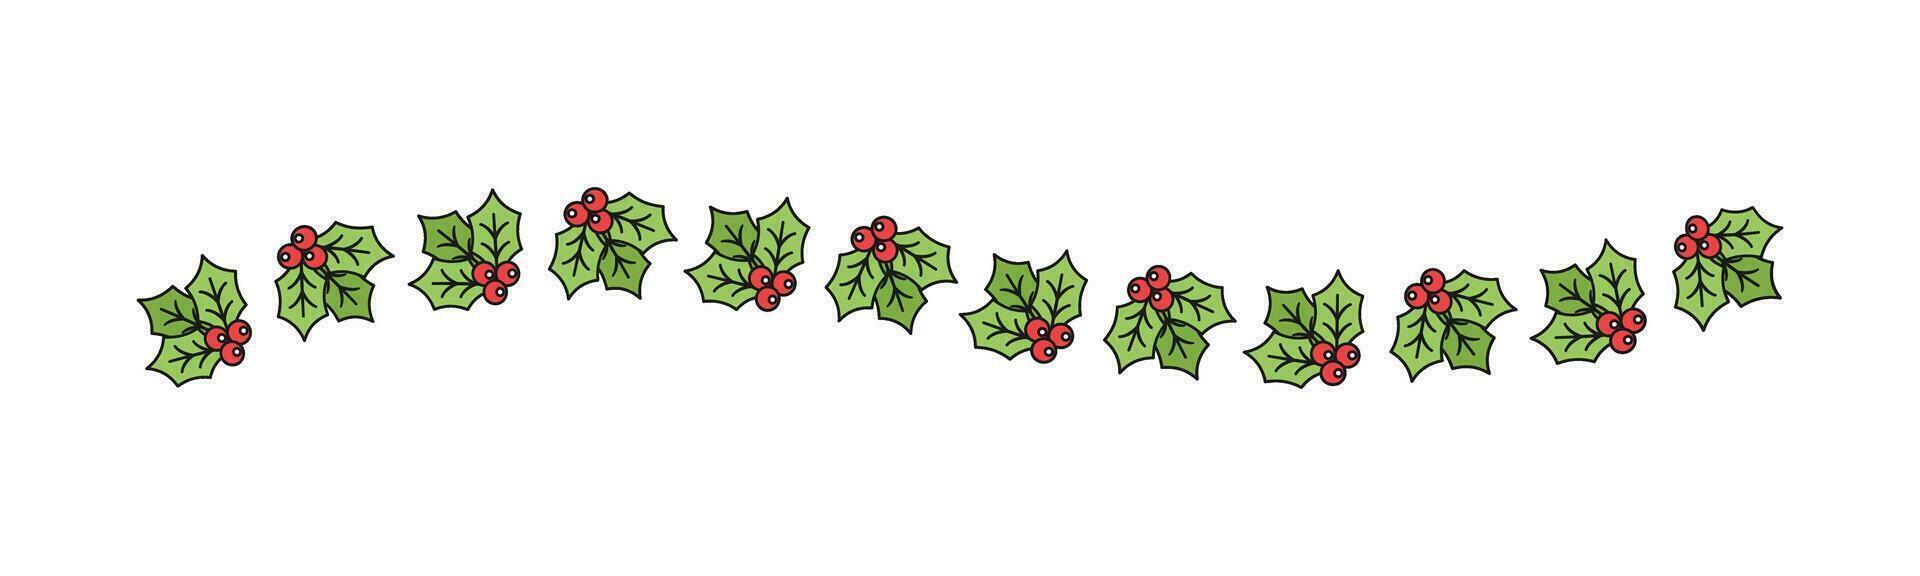 Navidad temática decorativo ondulado frontera y texto divisor, muérdago y caramelo caña modelo. vector ilustración.